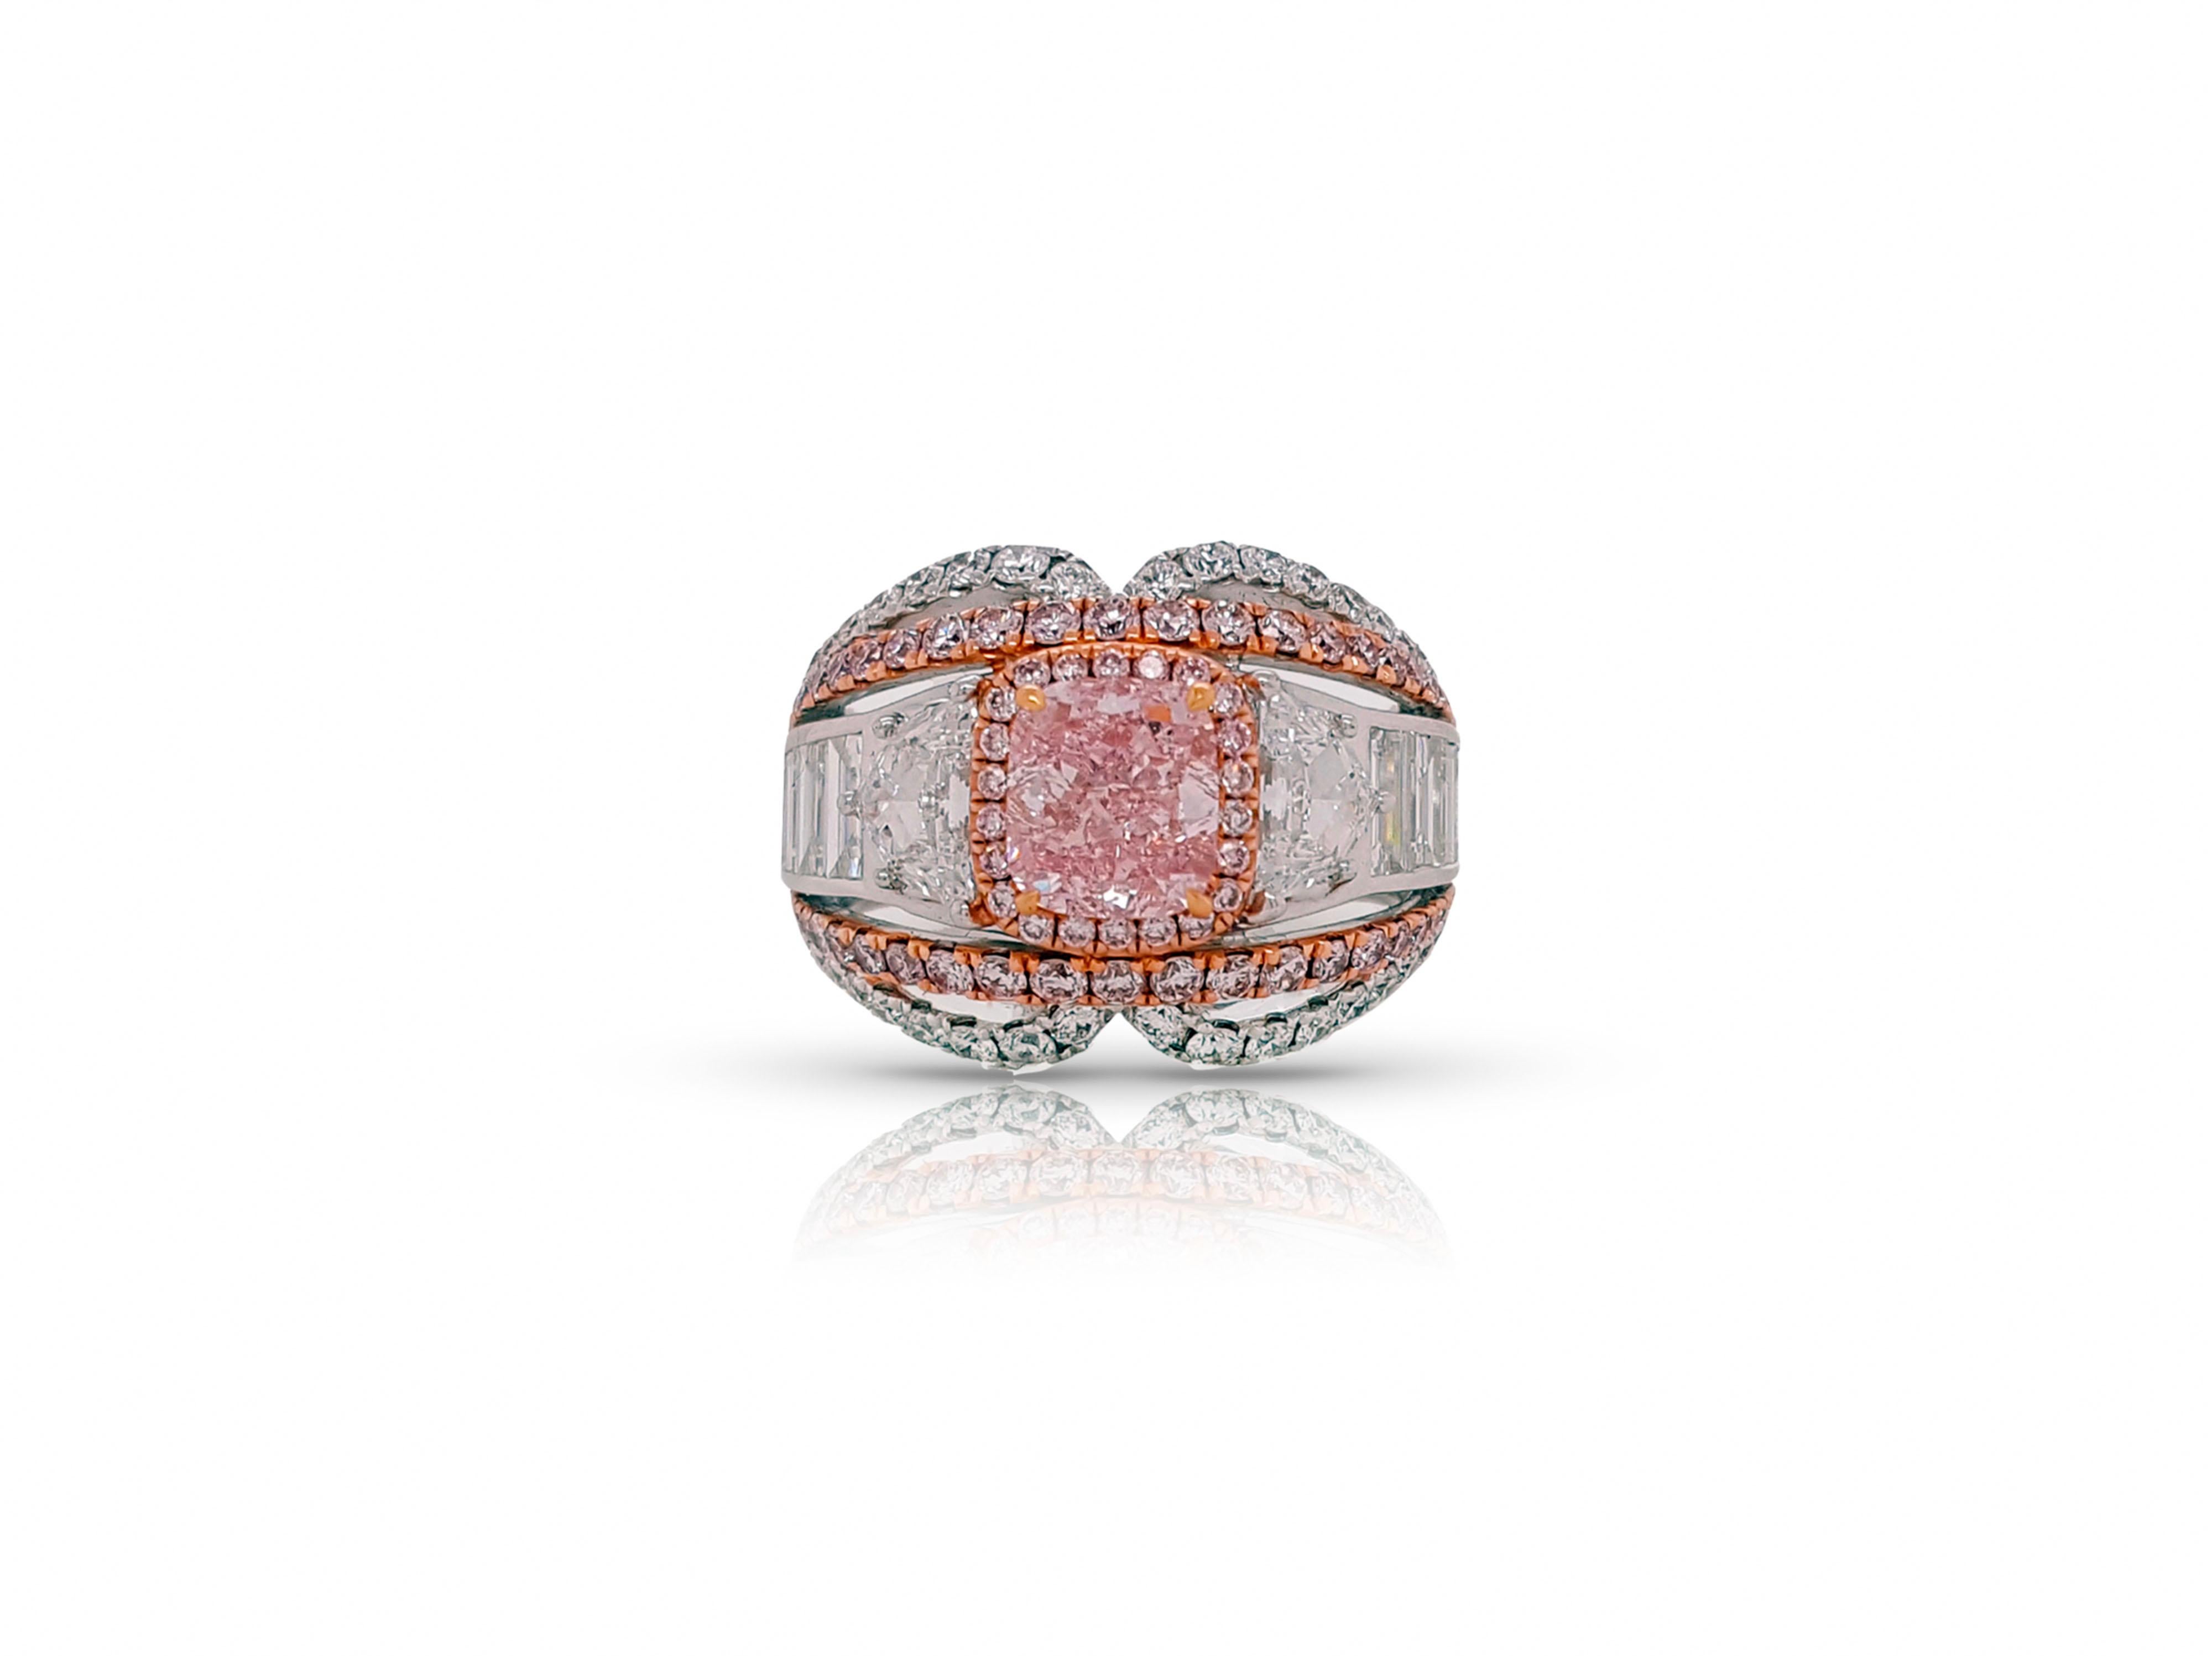 Ein bemerkenswerter Verlobungs- und Cocktail-Diamantring mit einem Gesamtgewicht von 4,74 Karat und einem einzigartigen Design, das Bewunderer aus nah und fern in seinen Bann zieht. GIA-zertifizierter 1,32 Karat Fancy Intense Purple-Pink Diamant im